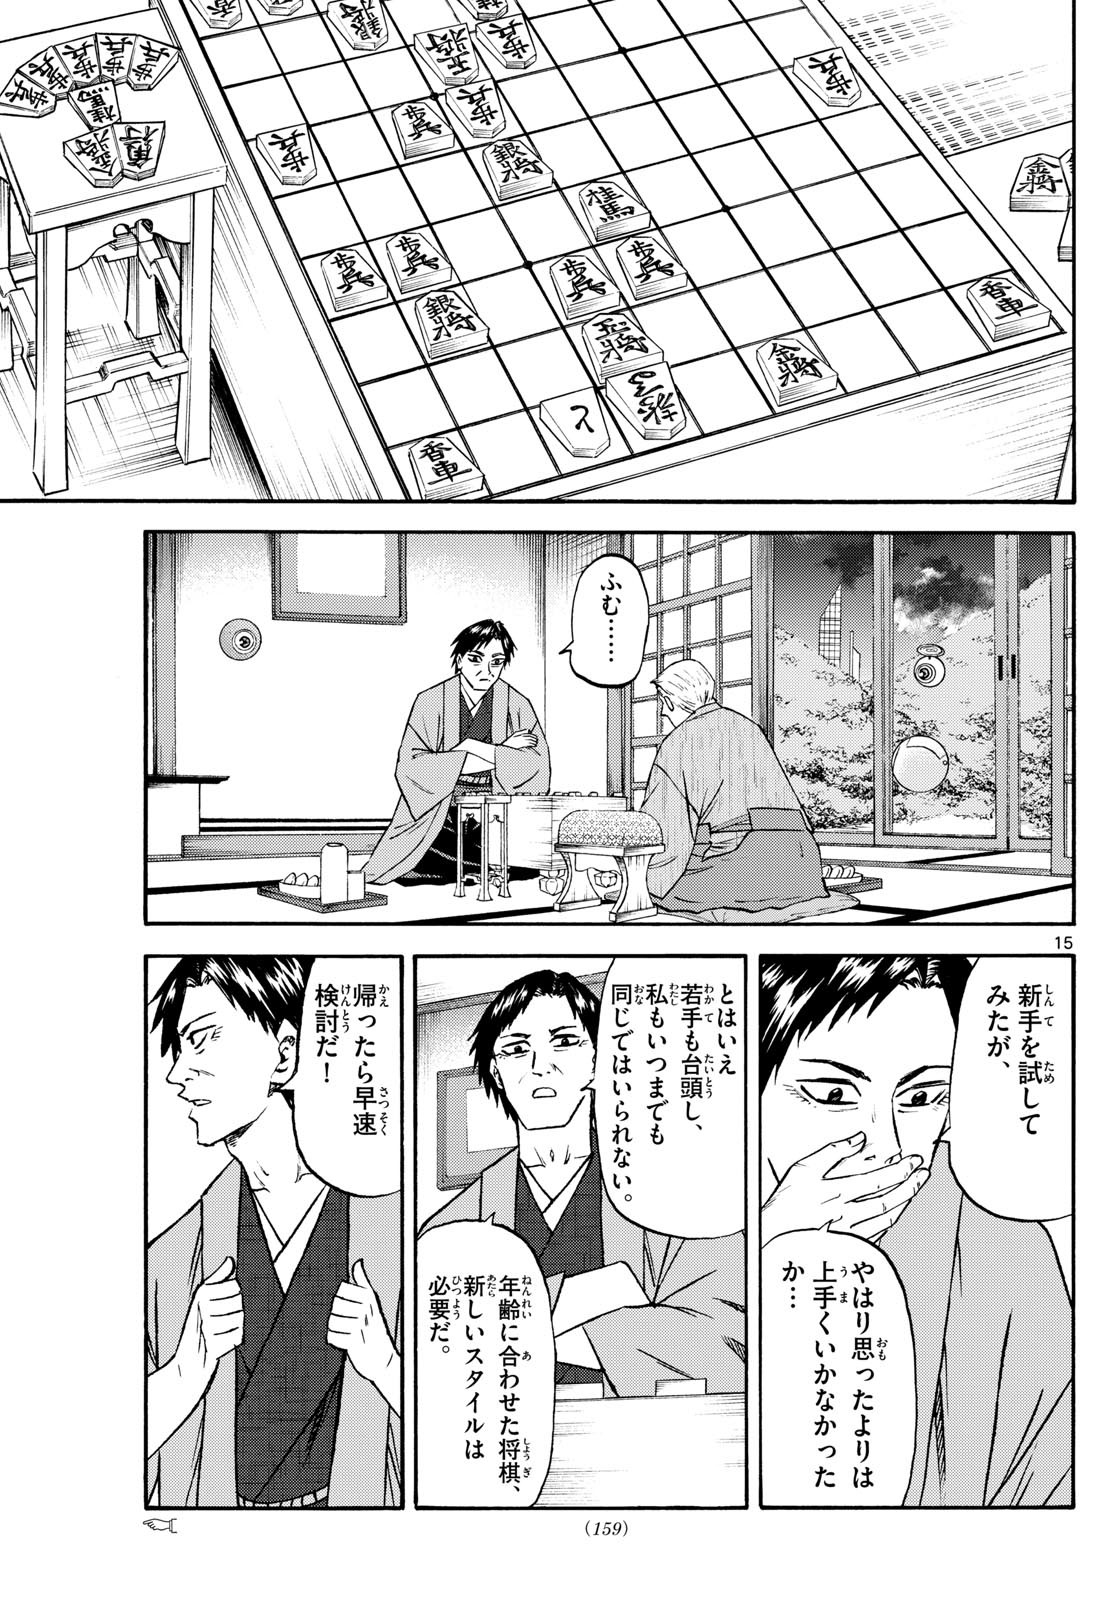 Ryu-to-Ichigo - Chapter 195 - Page 15